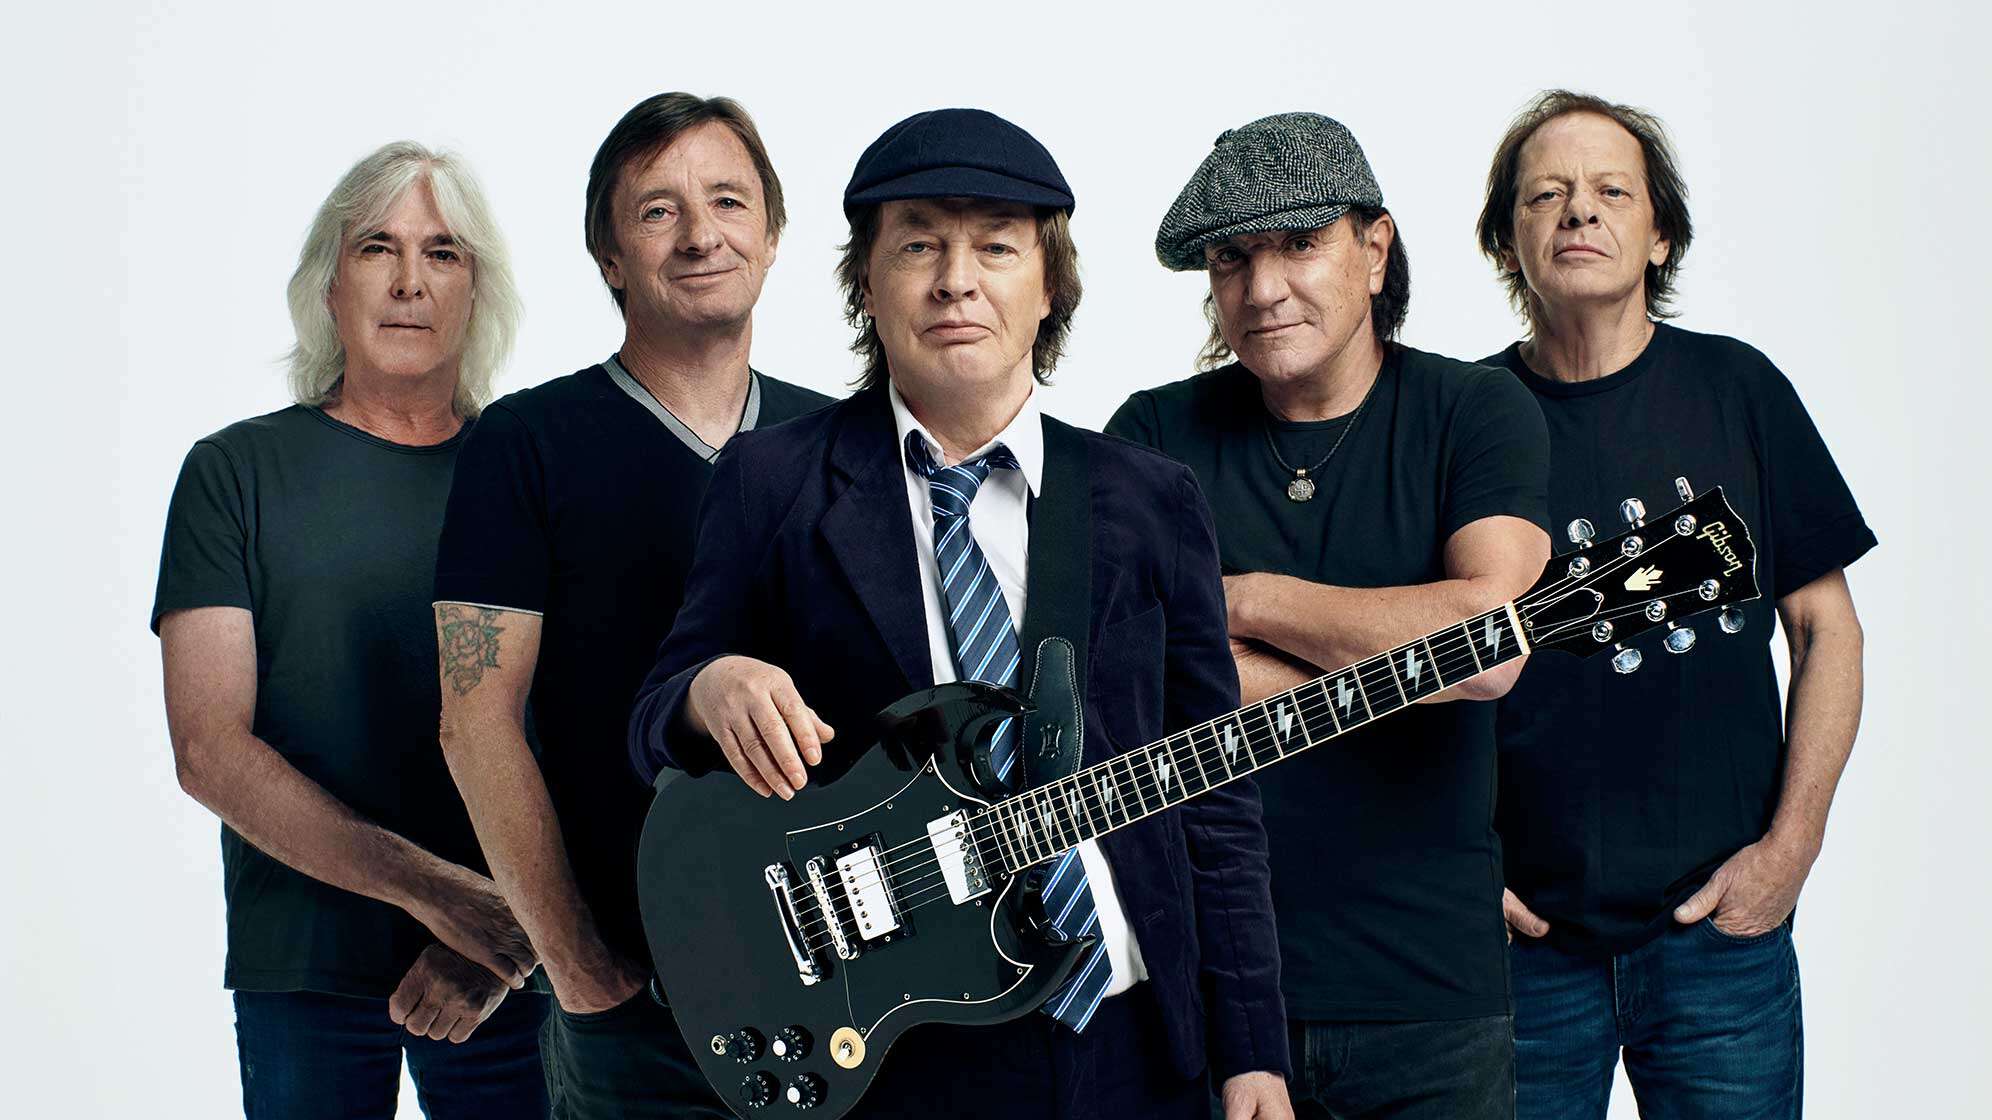 Das aktuelle Bandfoto der Band AC/DC, von links nach rechts: Cliff Williams, Phil Rudd, Angus Young, Brian Johnson und Stevie Young.